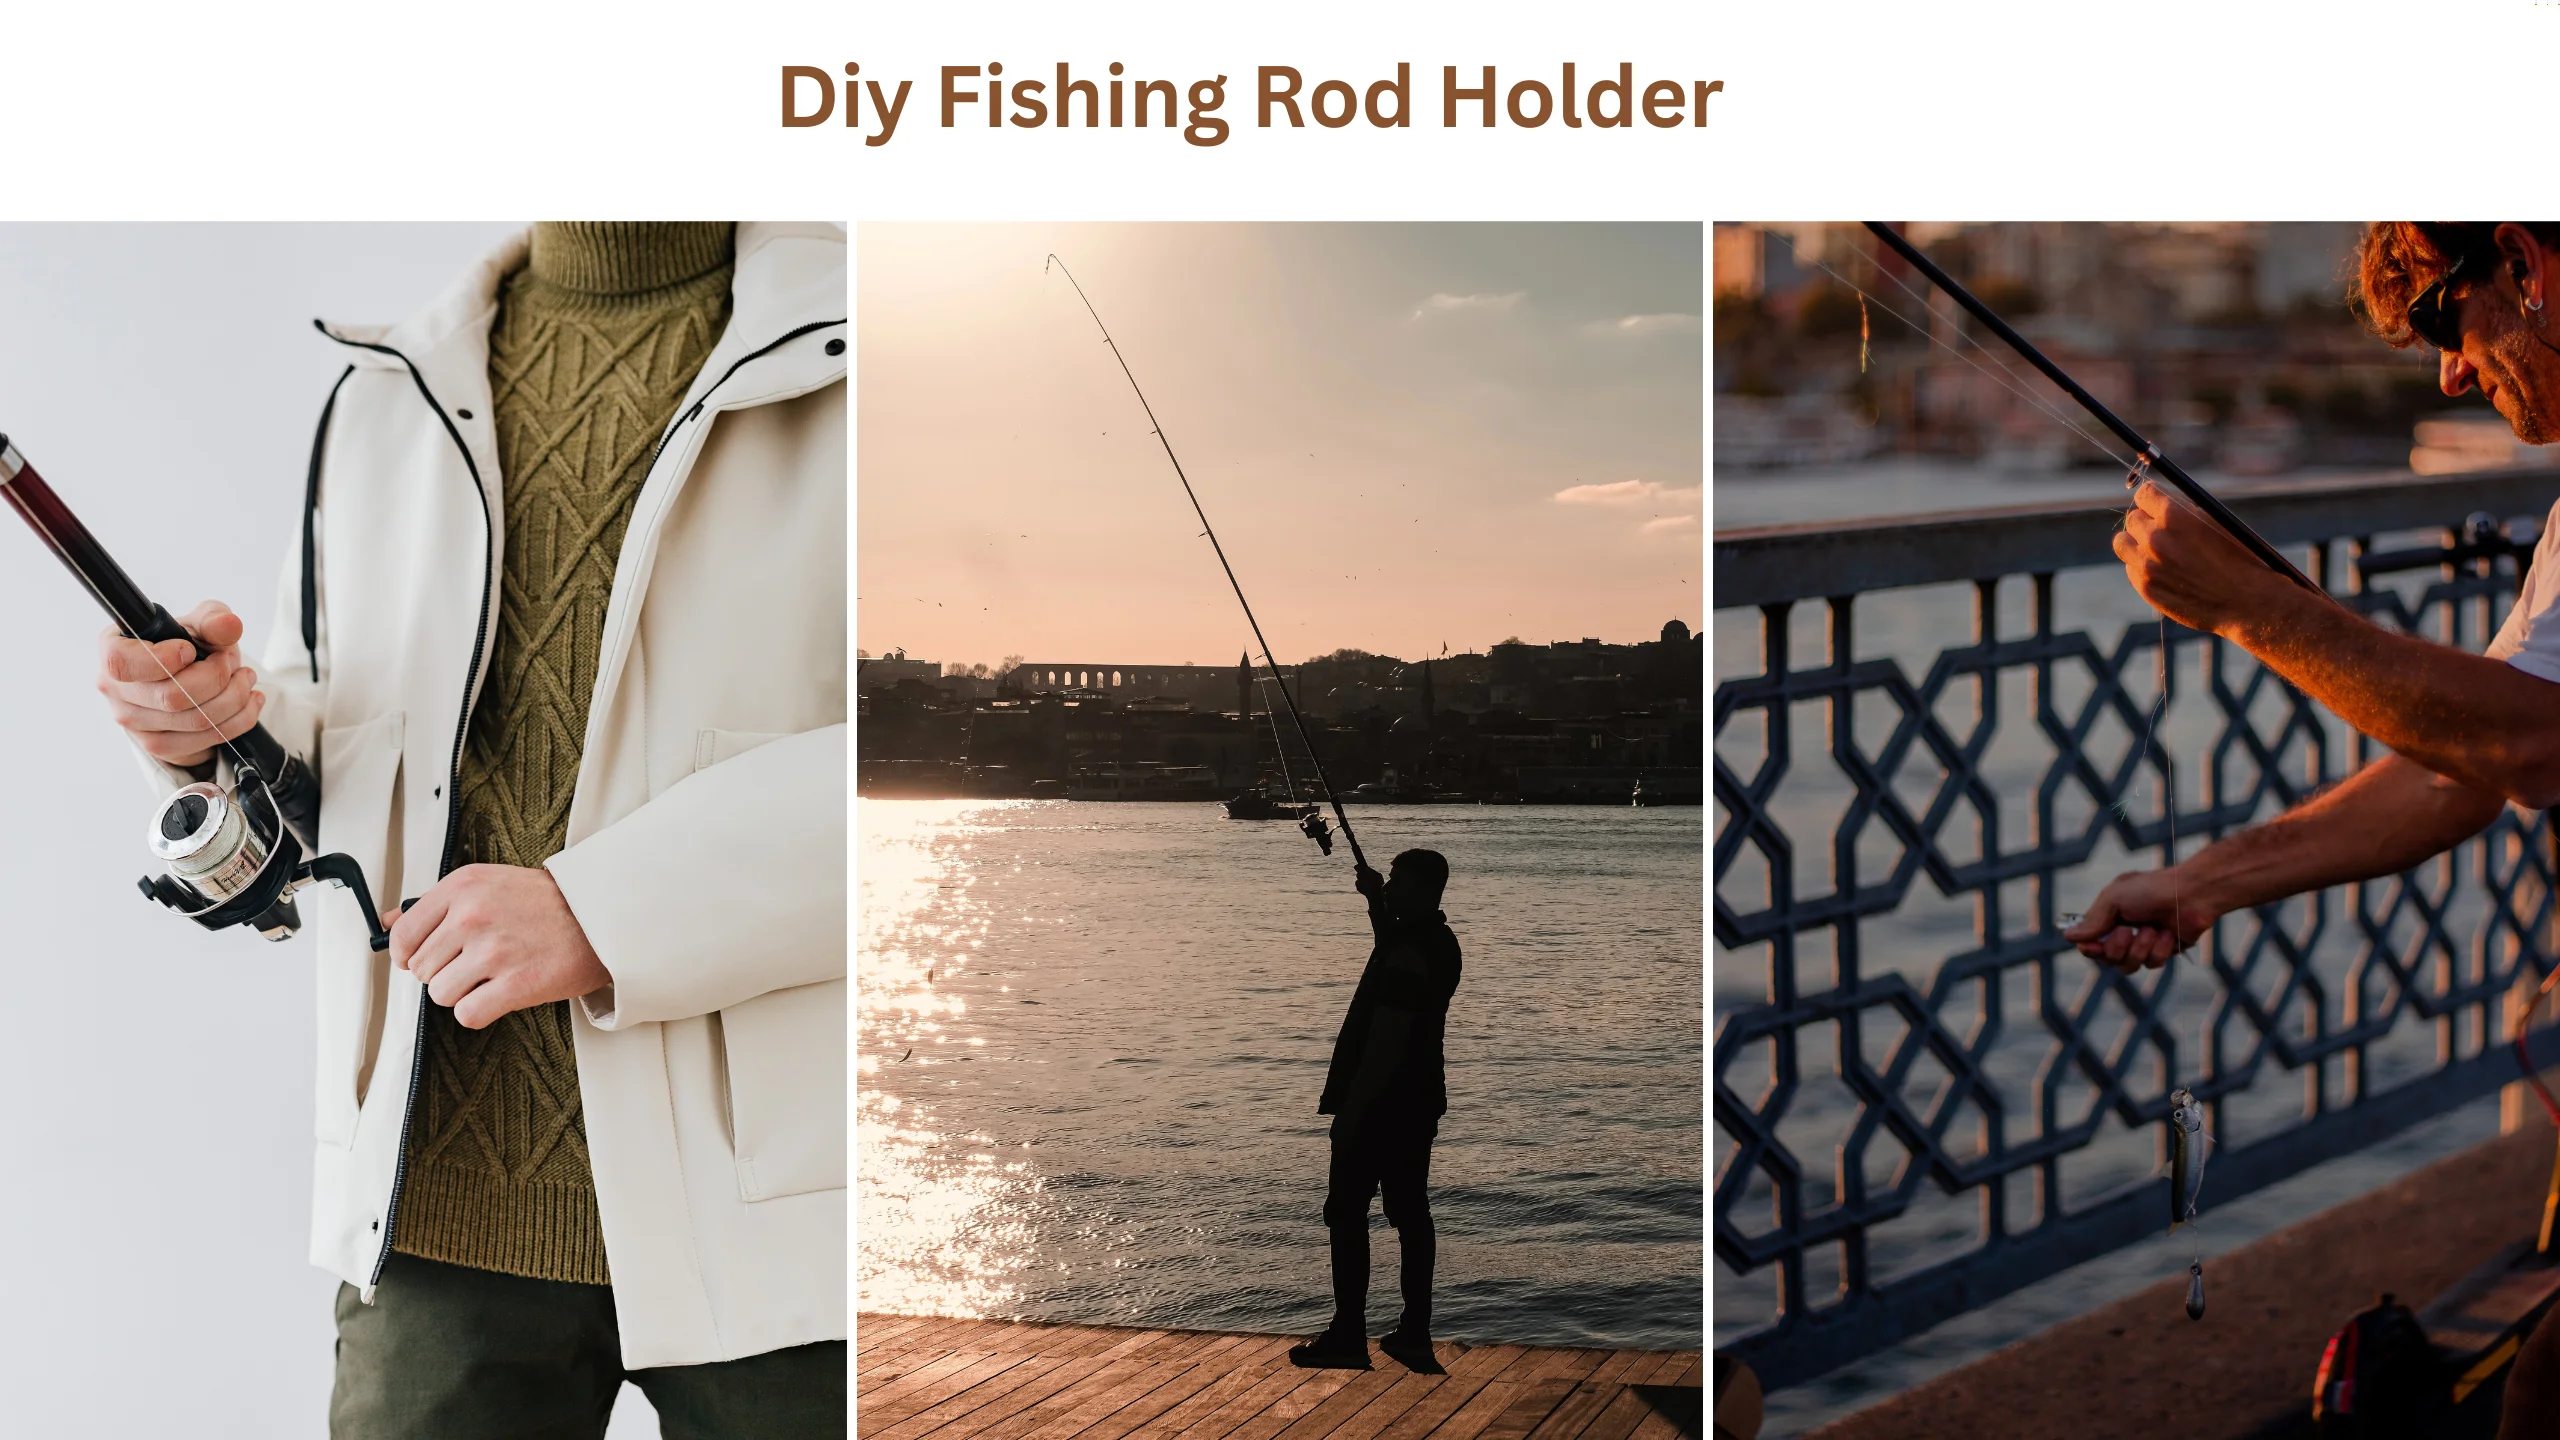 Diy fishing rod holder